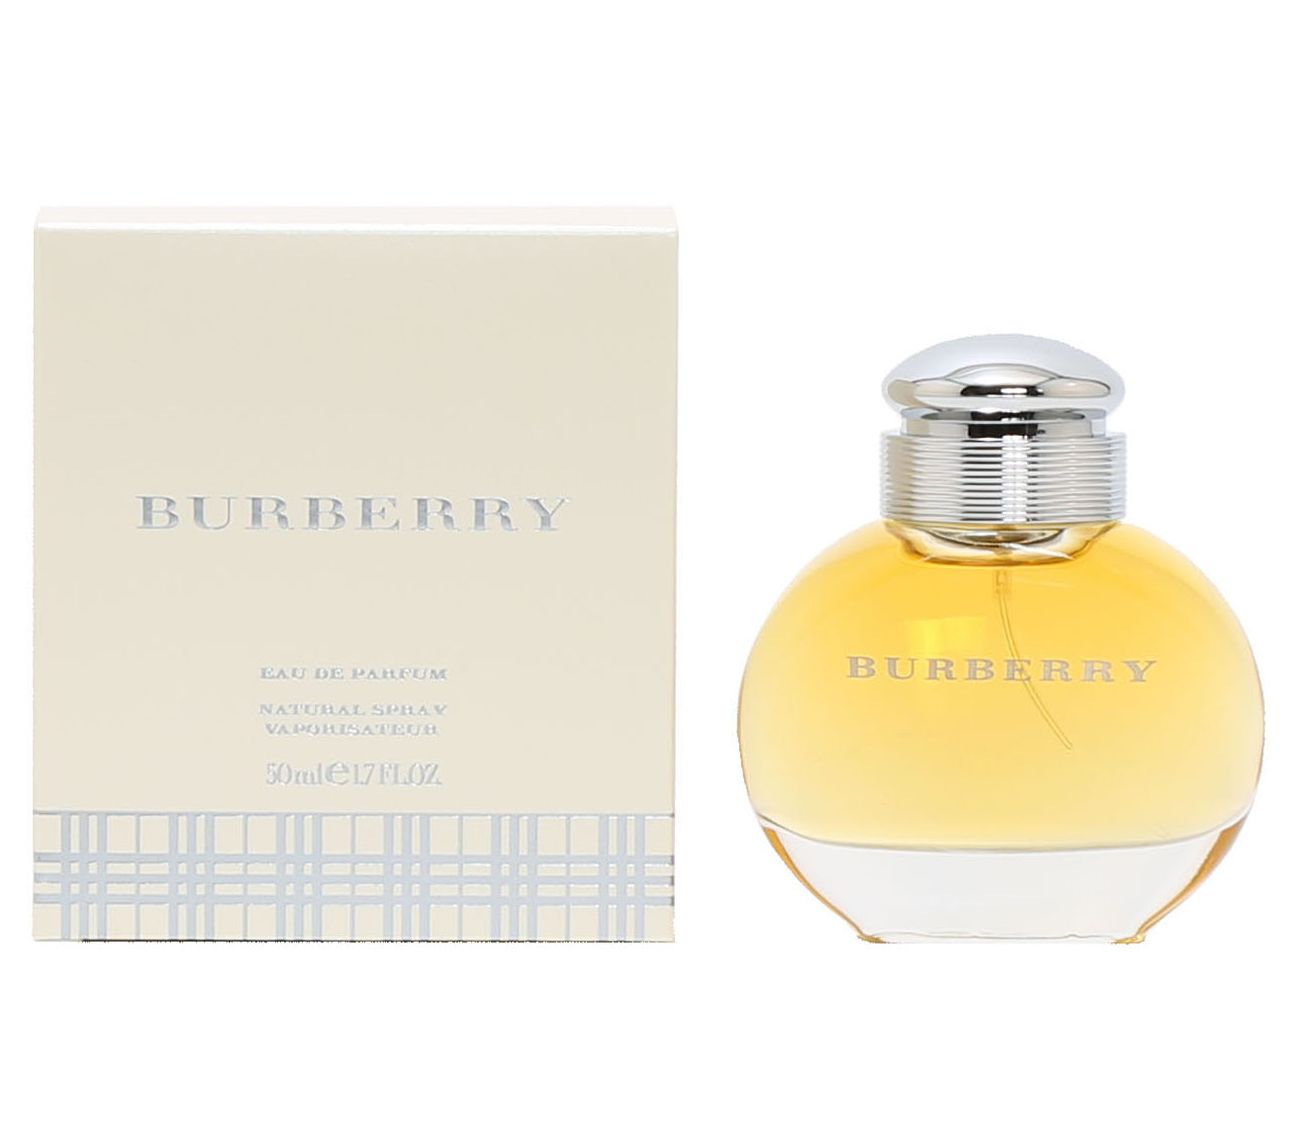 Burberry Classic for Women Eau De oz Spray,1.7-fl Parfum